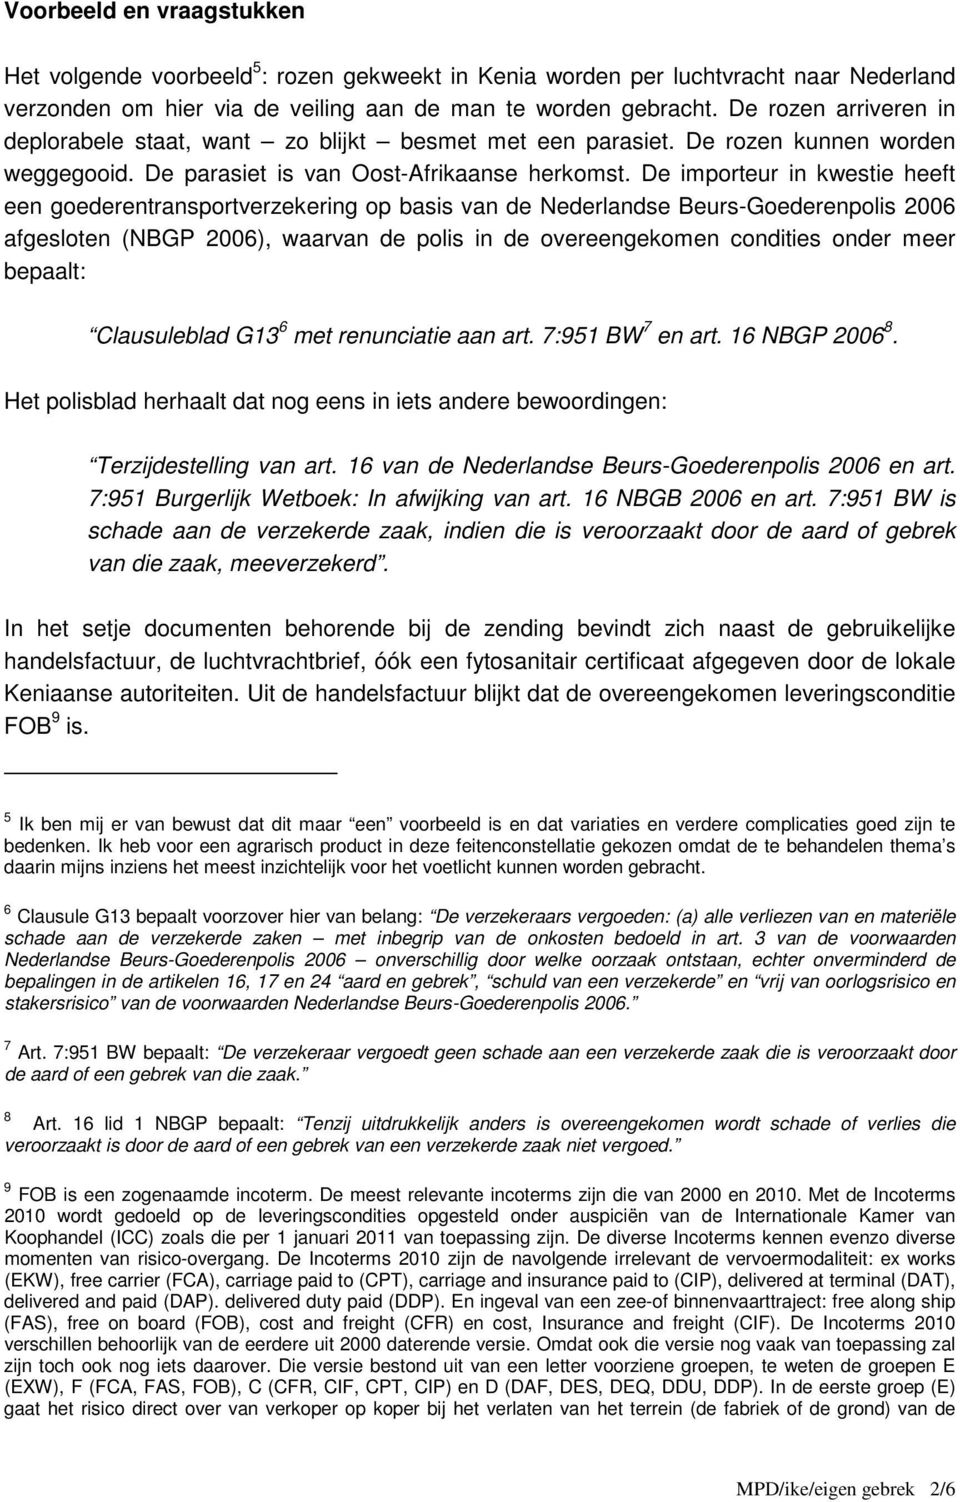 De importeur in kwestie heeft een goederentransportverzekering op basis van de Nederlandse Beurs-Goederenpolis 2006 afgesloten (NBGP 2006), waarvan de polis in de overeengekomen condities onder meer